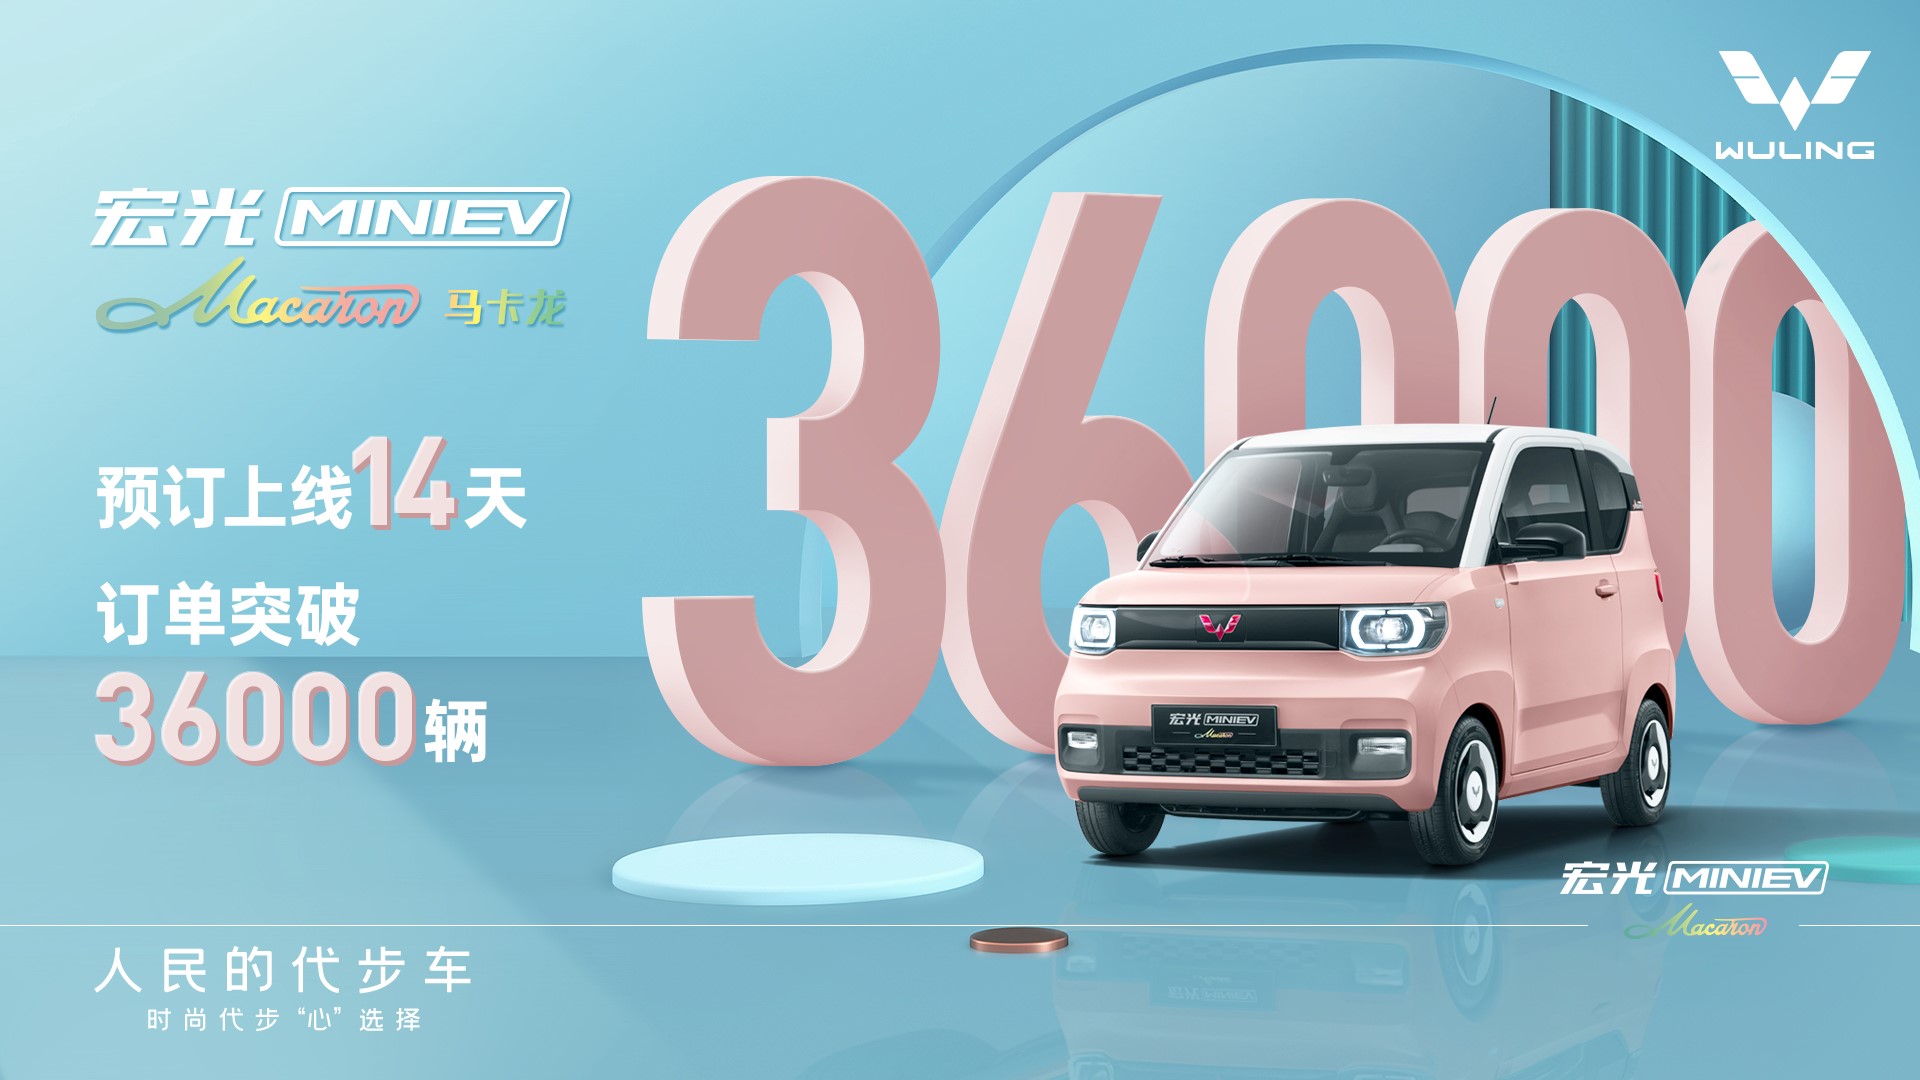 通用汽车将在中国推出五菱宏光迷你电动汽车马卡龙车型